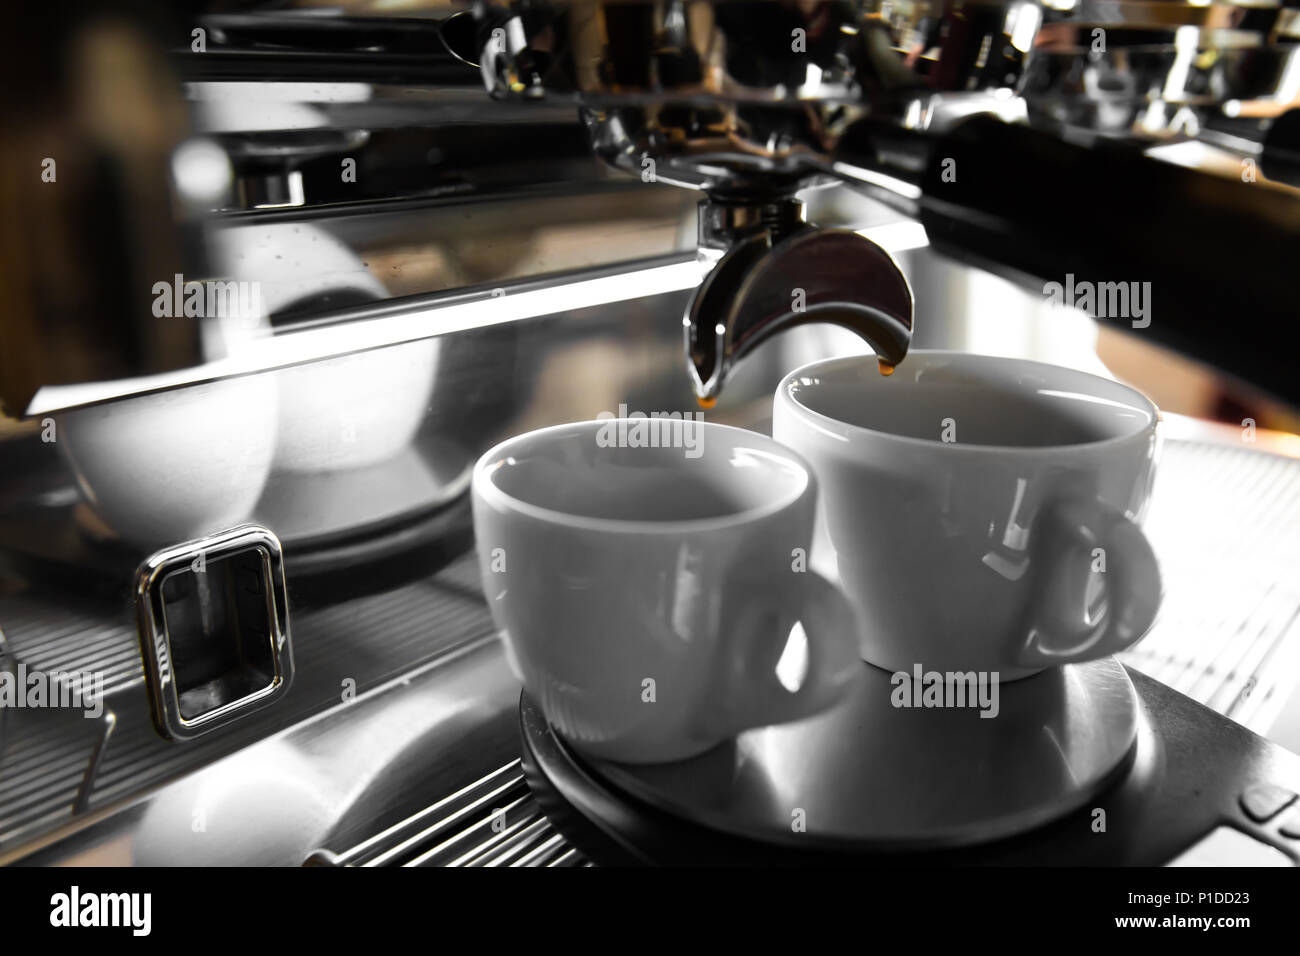 Italienische Espresso-Maschine auf einen Zähler in einem Restaurant Abgabe frisch gebrauten Kaffee in zwei kleine Tassen Stockfoto